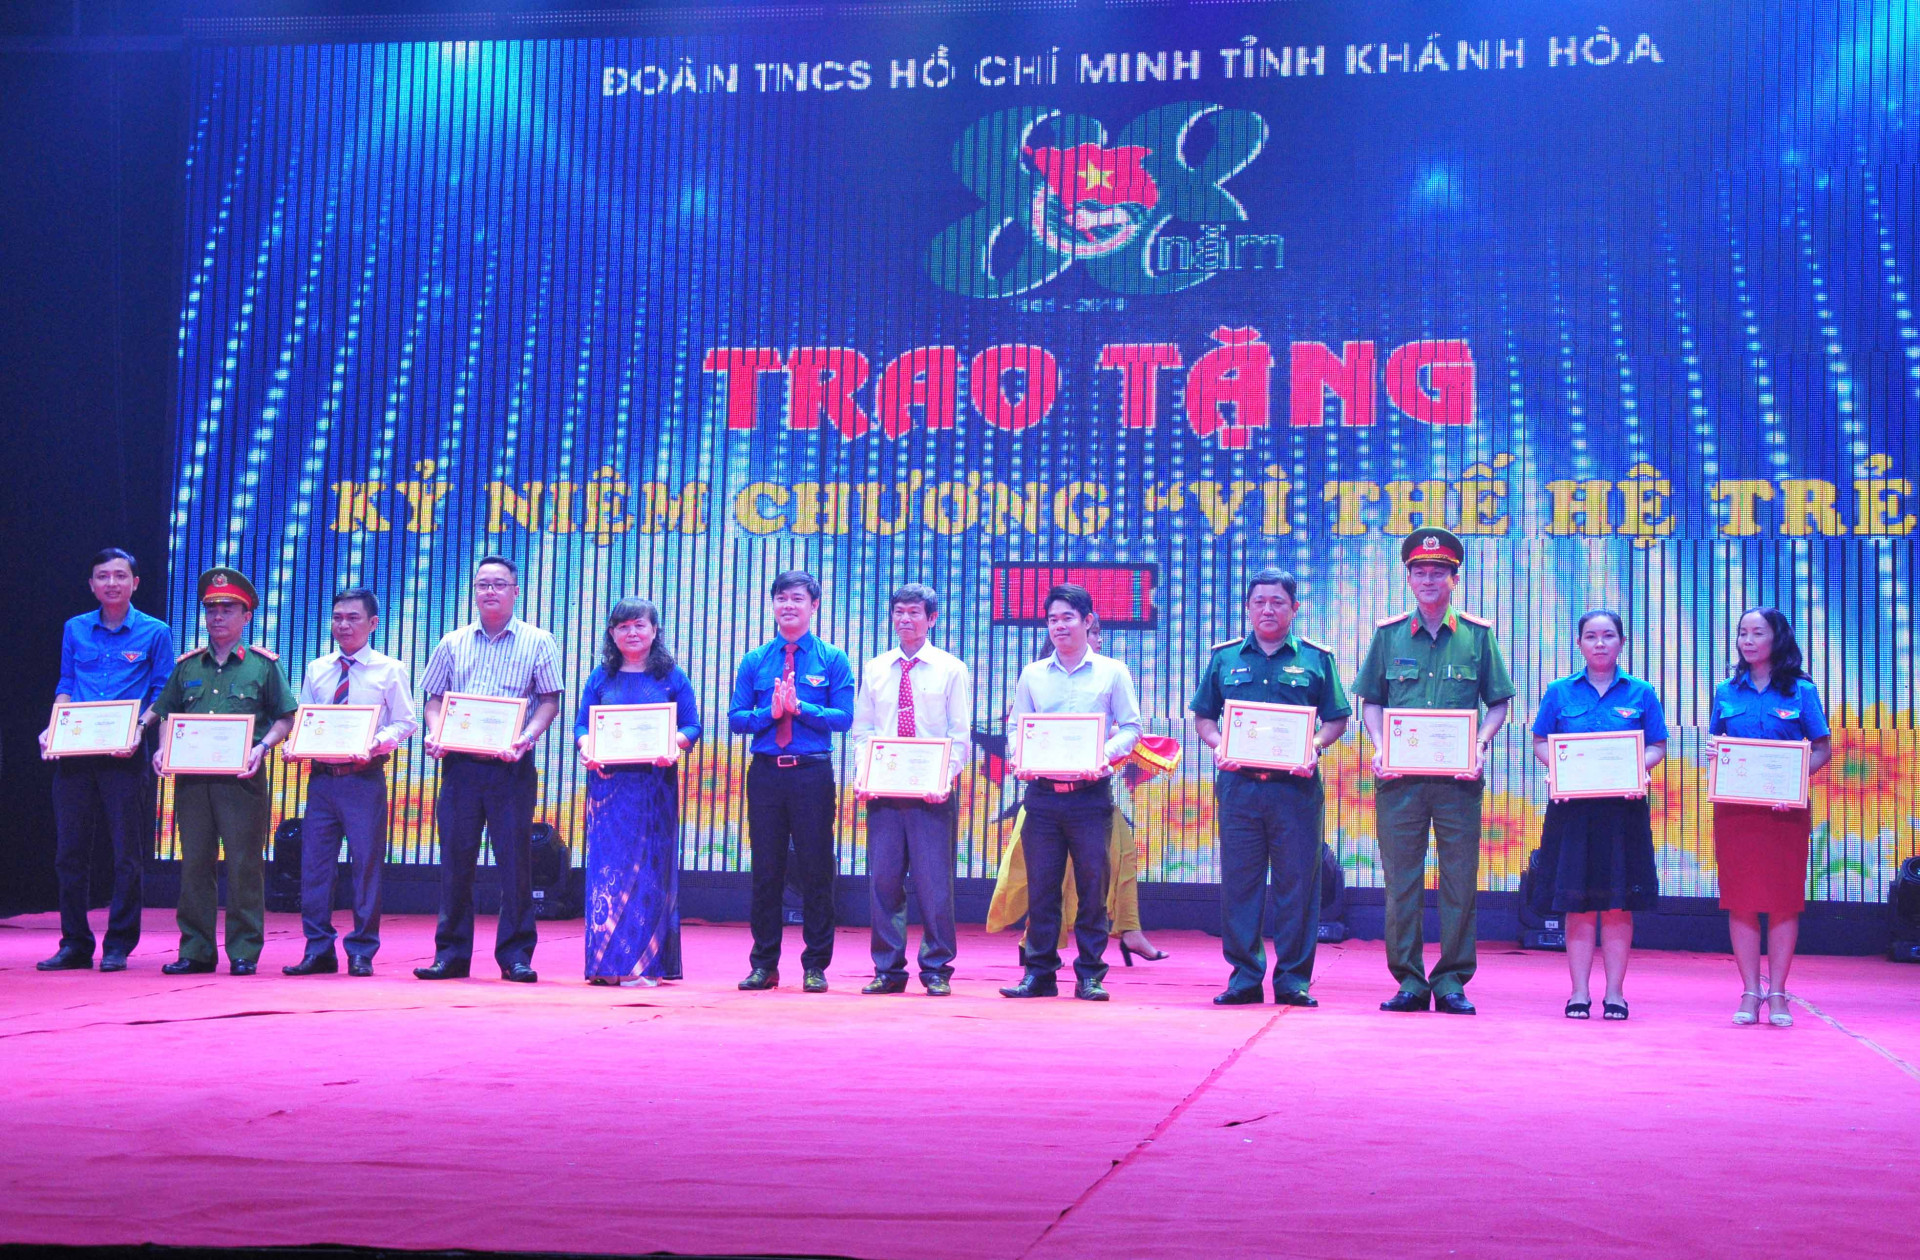 Lãnh đạo Tỉnh đoàn trao kỷ niệm chương của Trung ương Đoàn cho các cá nhân có thành tích trong sự nghiệp giáo dục thế hệ trẻ